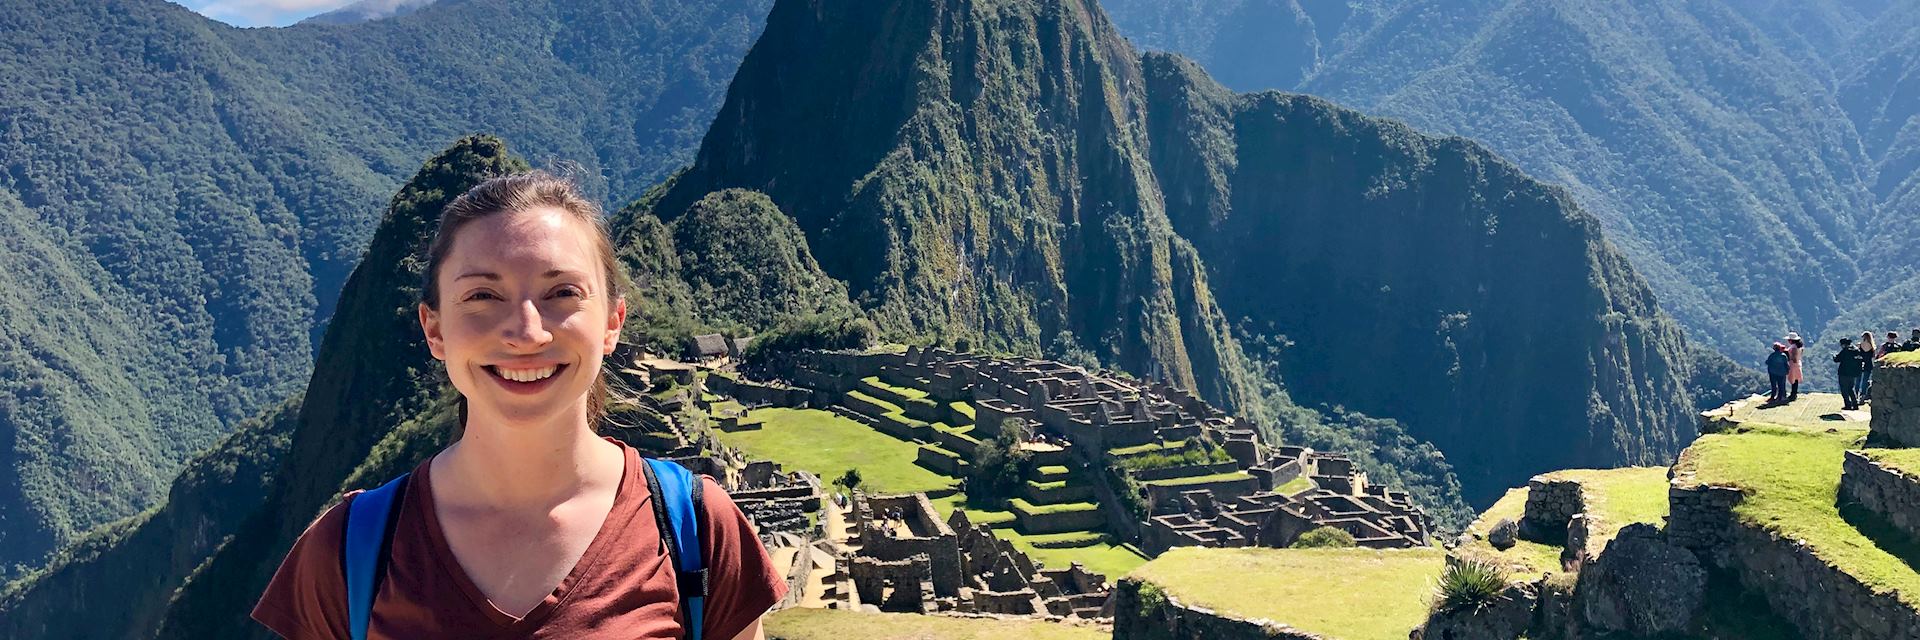 Emma at Machu Picchu in Peru